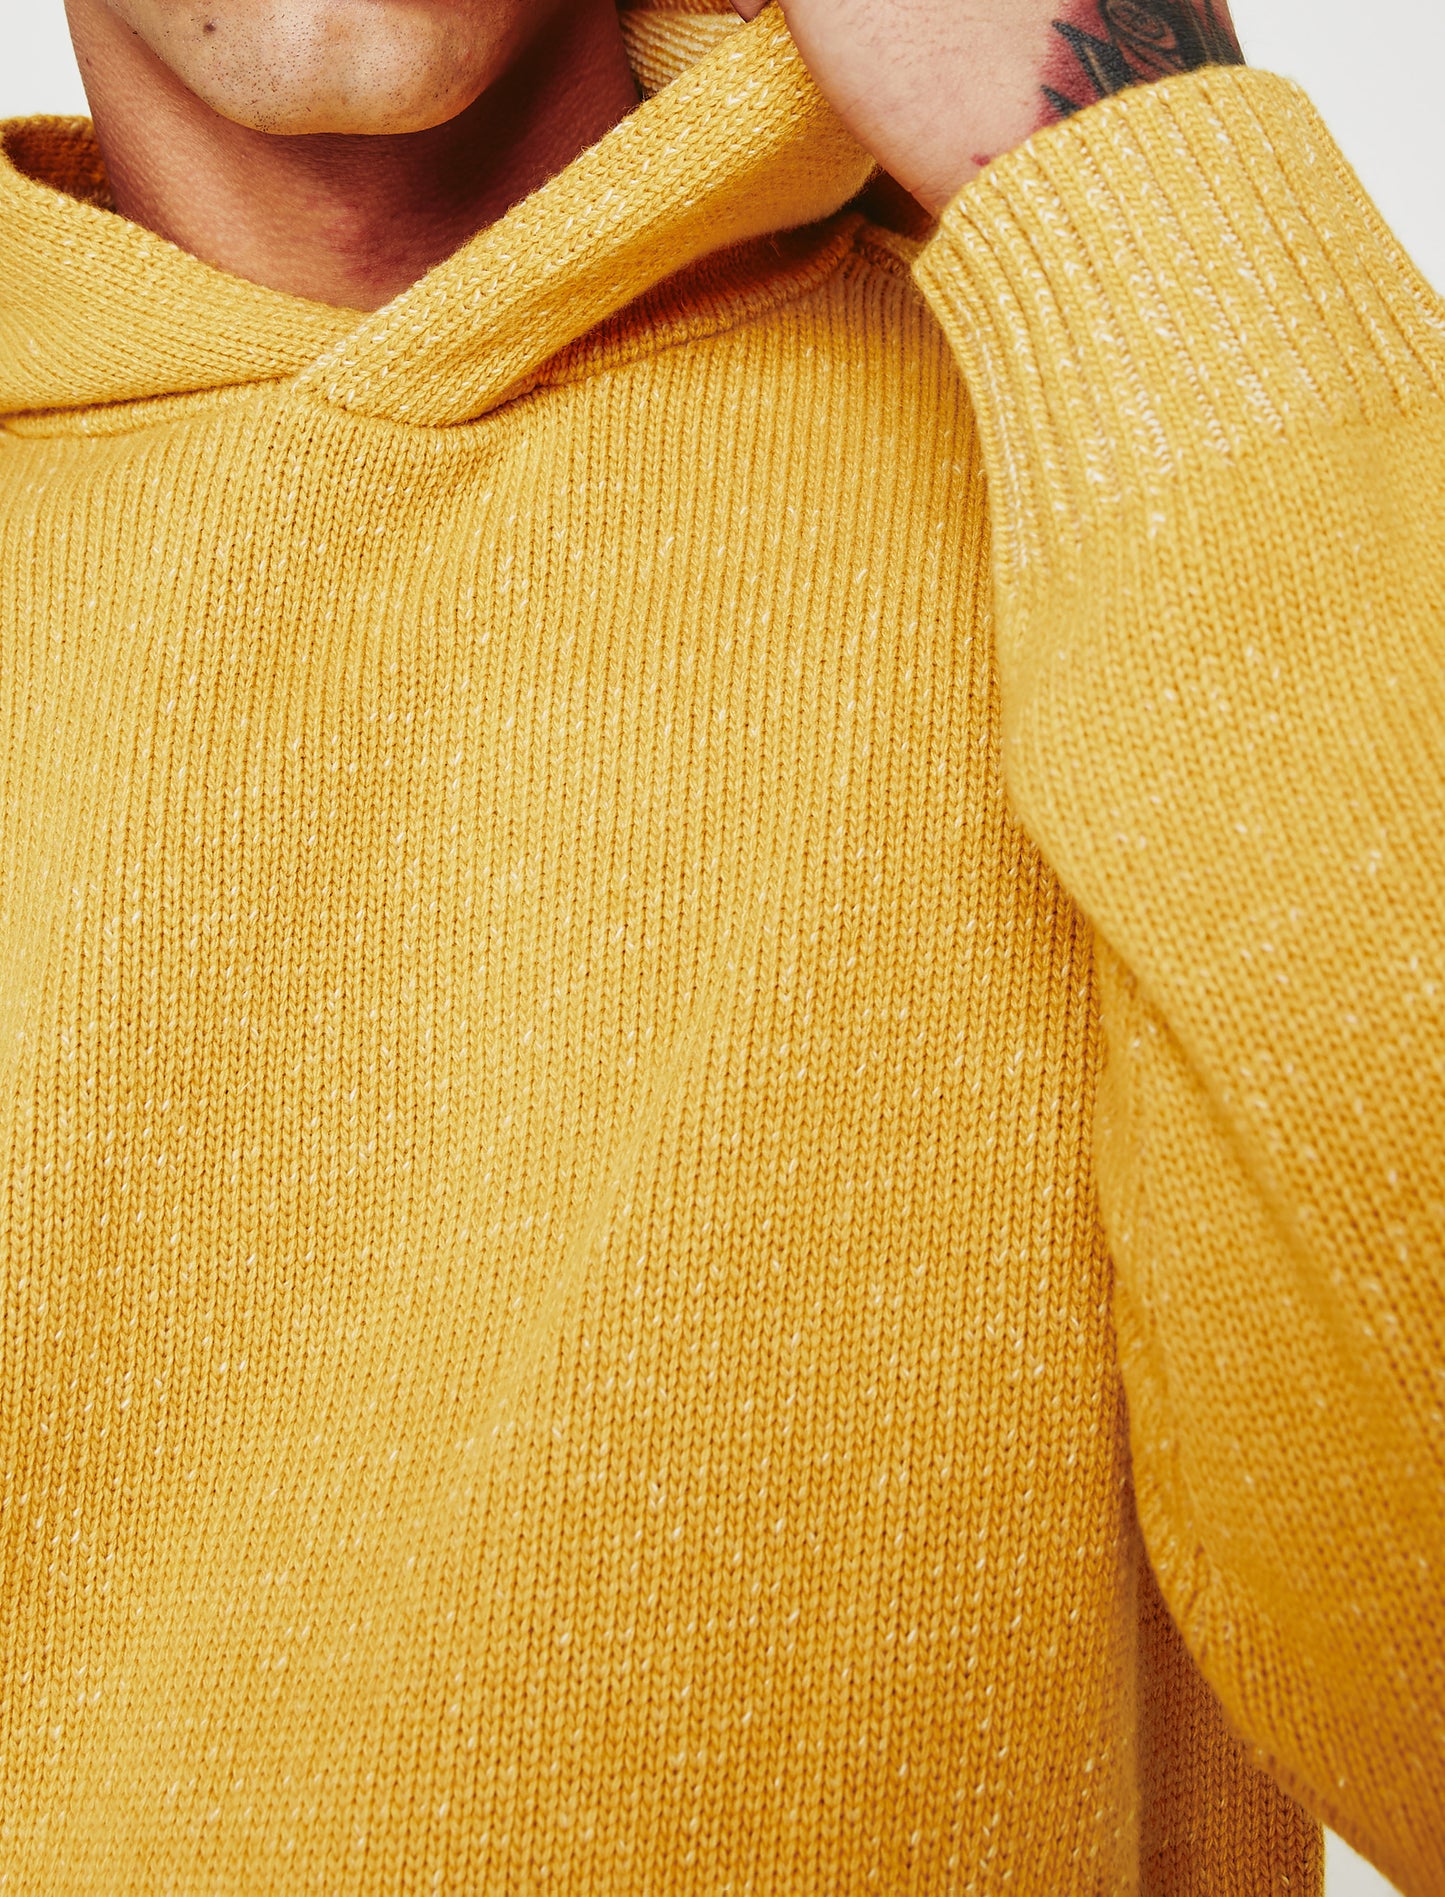 Jarren Hoodie Speckled Yellow Topaz Made In Italy Men Top Photo 3